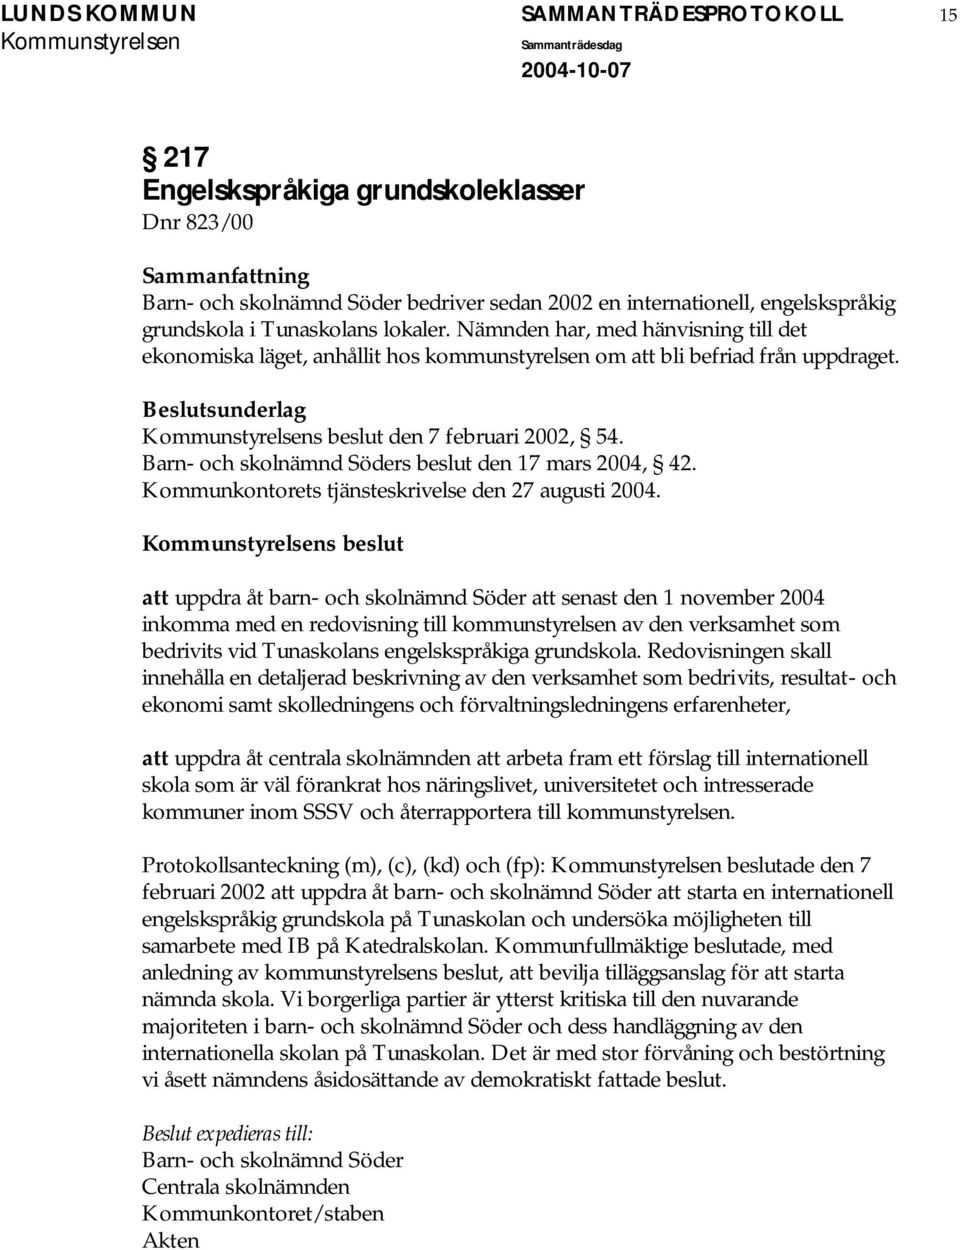 Barn- och skolnämnd Söders beslut den 17 mars 2004, 42. Kommunkontorets tjänsteskrivelse den 27 augusti 2004.